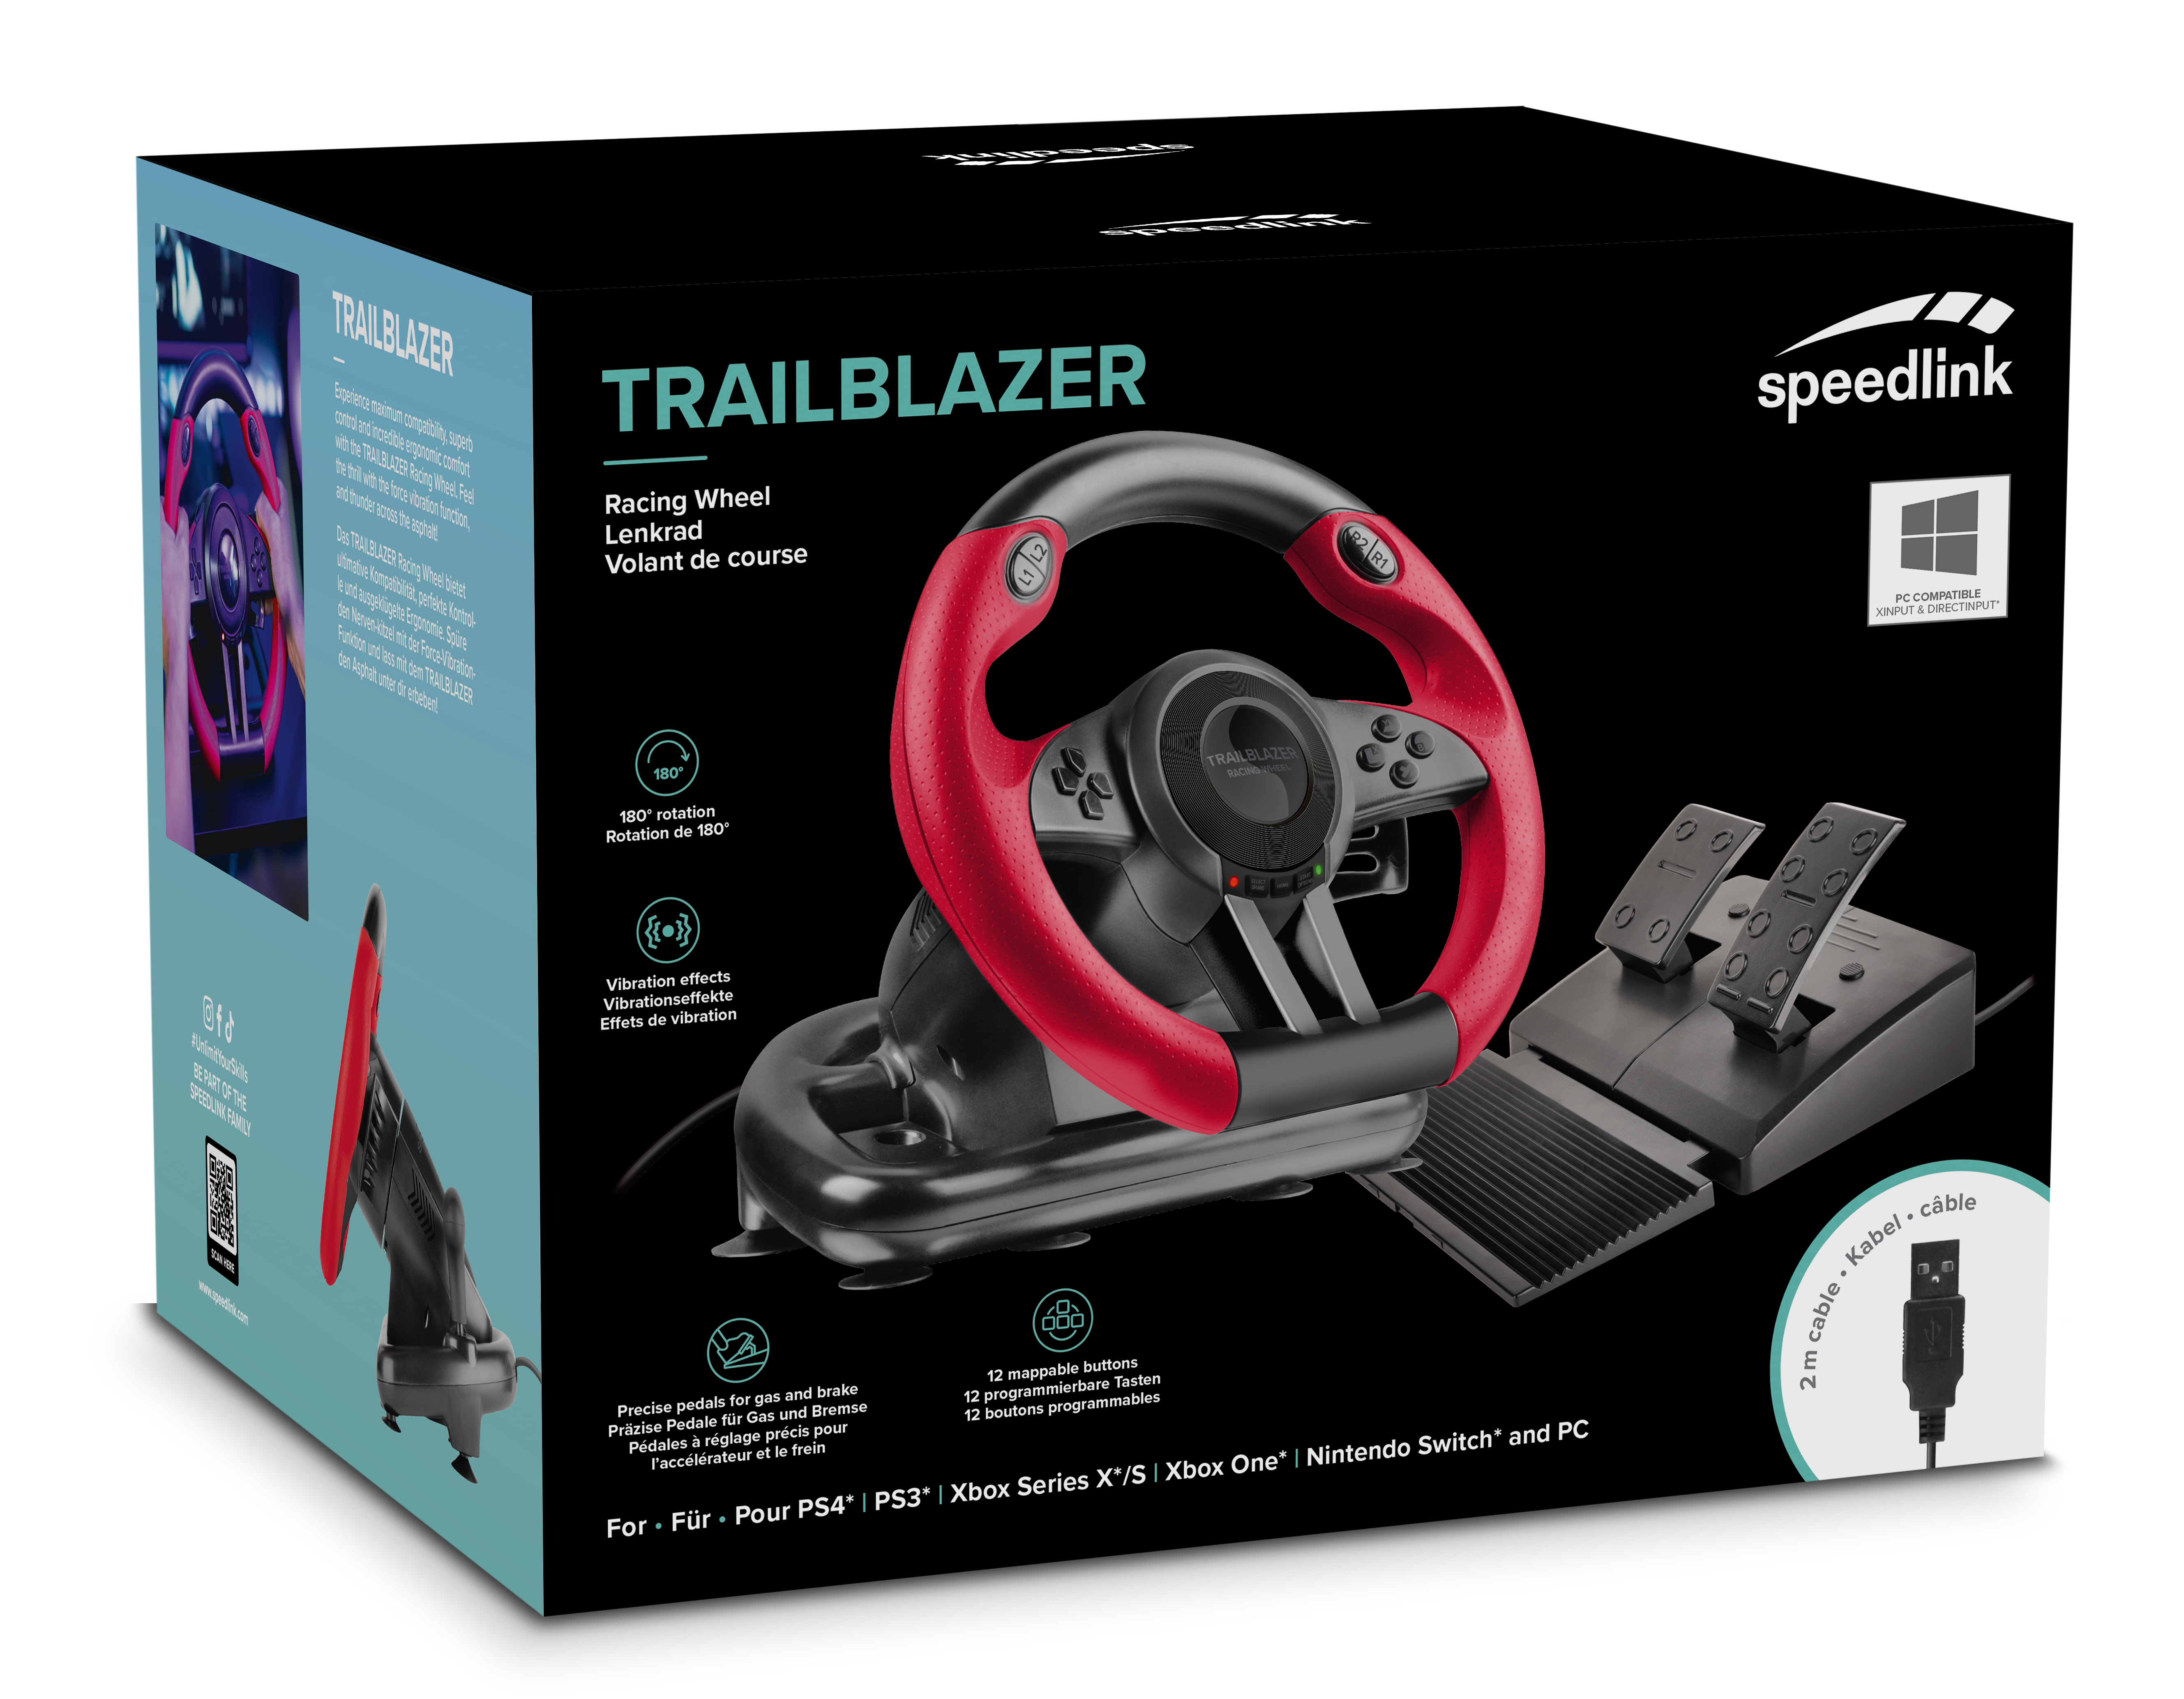 Speedlink TRAILBLAZER Racing Gaming-Lenkrad (für PC/PS4/PS3/Xbox Series  X/S/One/Switch/OLED), Gaming-Lenkrad für PlayStation® 3, 4 und PC